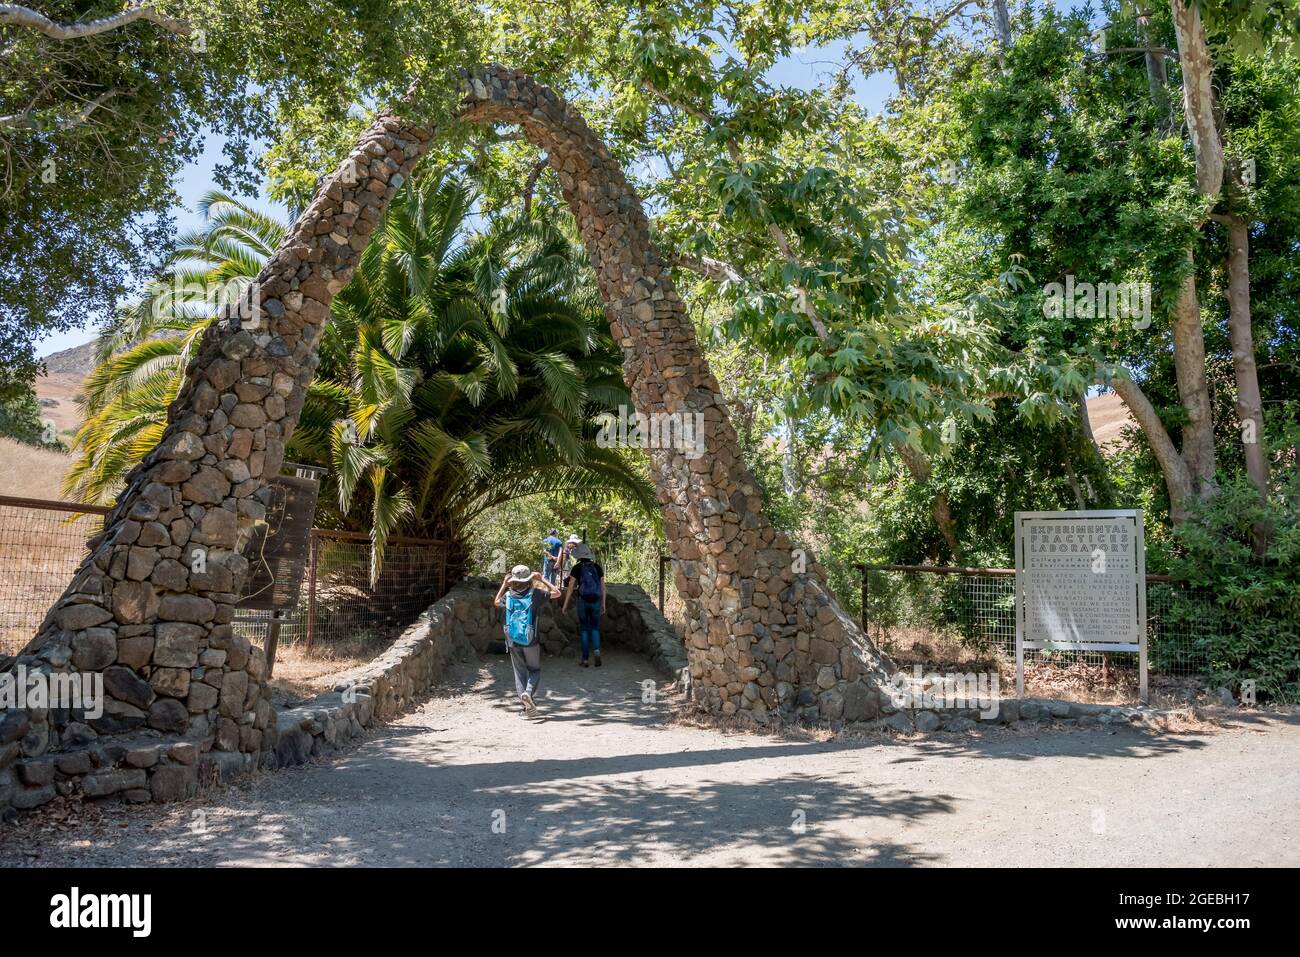 Une arche en pierre fantaisiste marque l'entrée du canyon architectural de Cal Poly, communément appelé « cimetière architectural ». A partir des années 1960, UN Banque D'Images